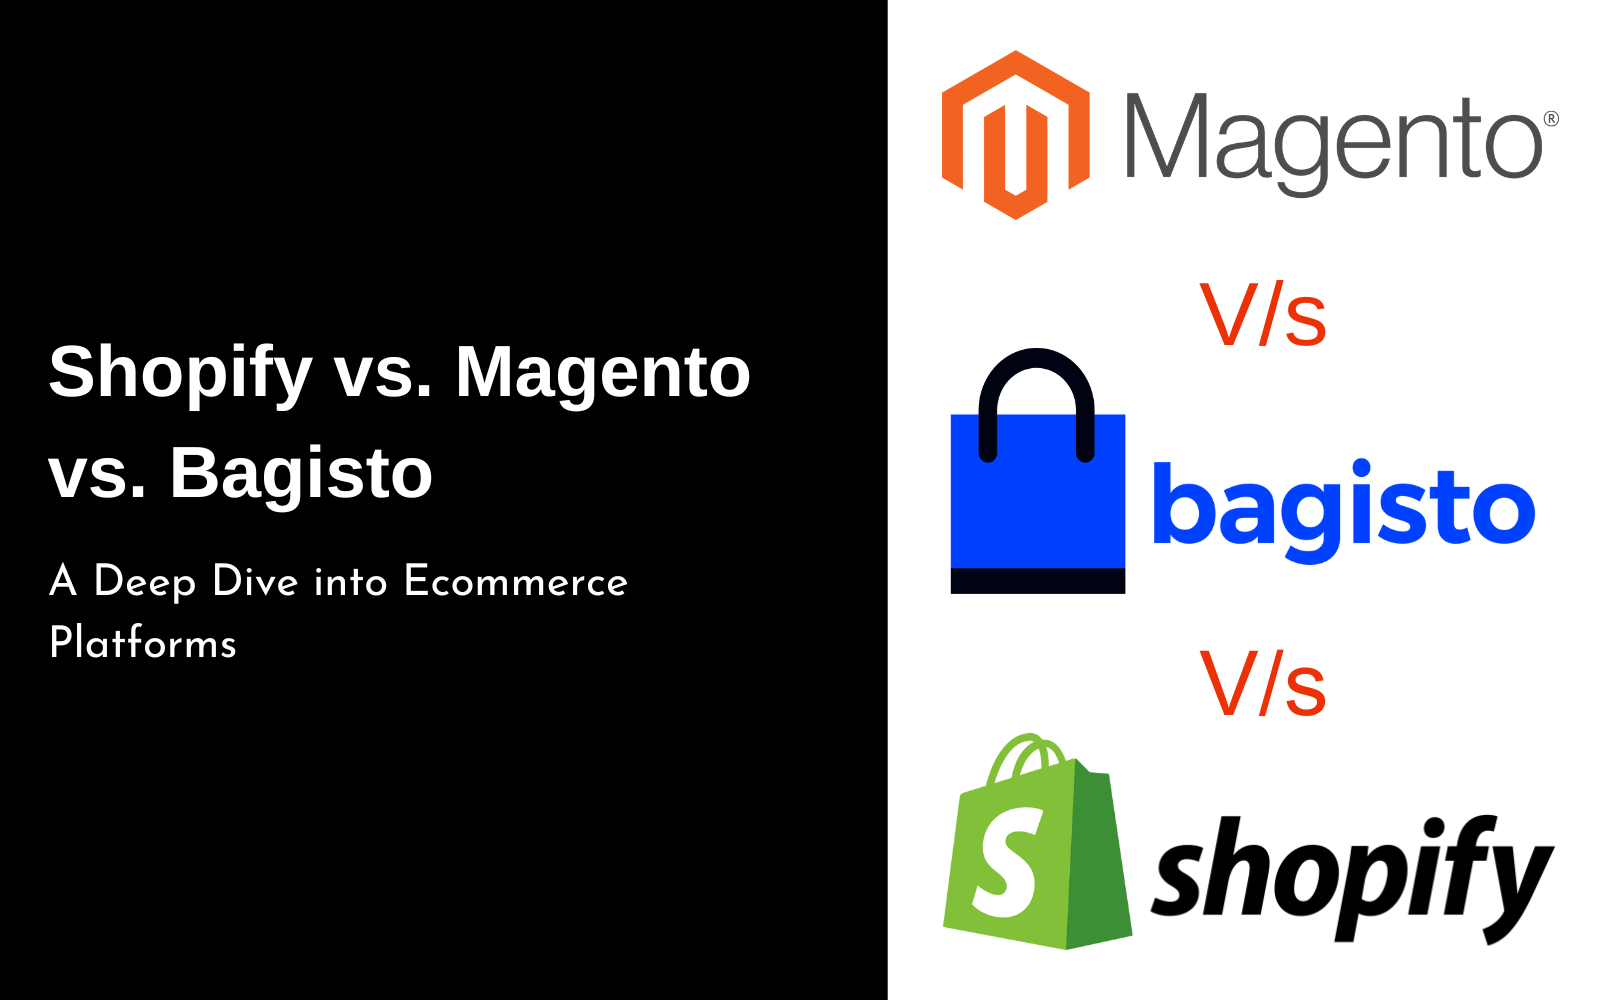 Shopify vs. Magento vs. Bagisto